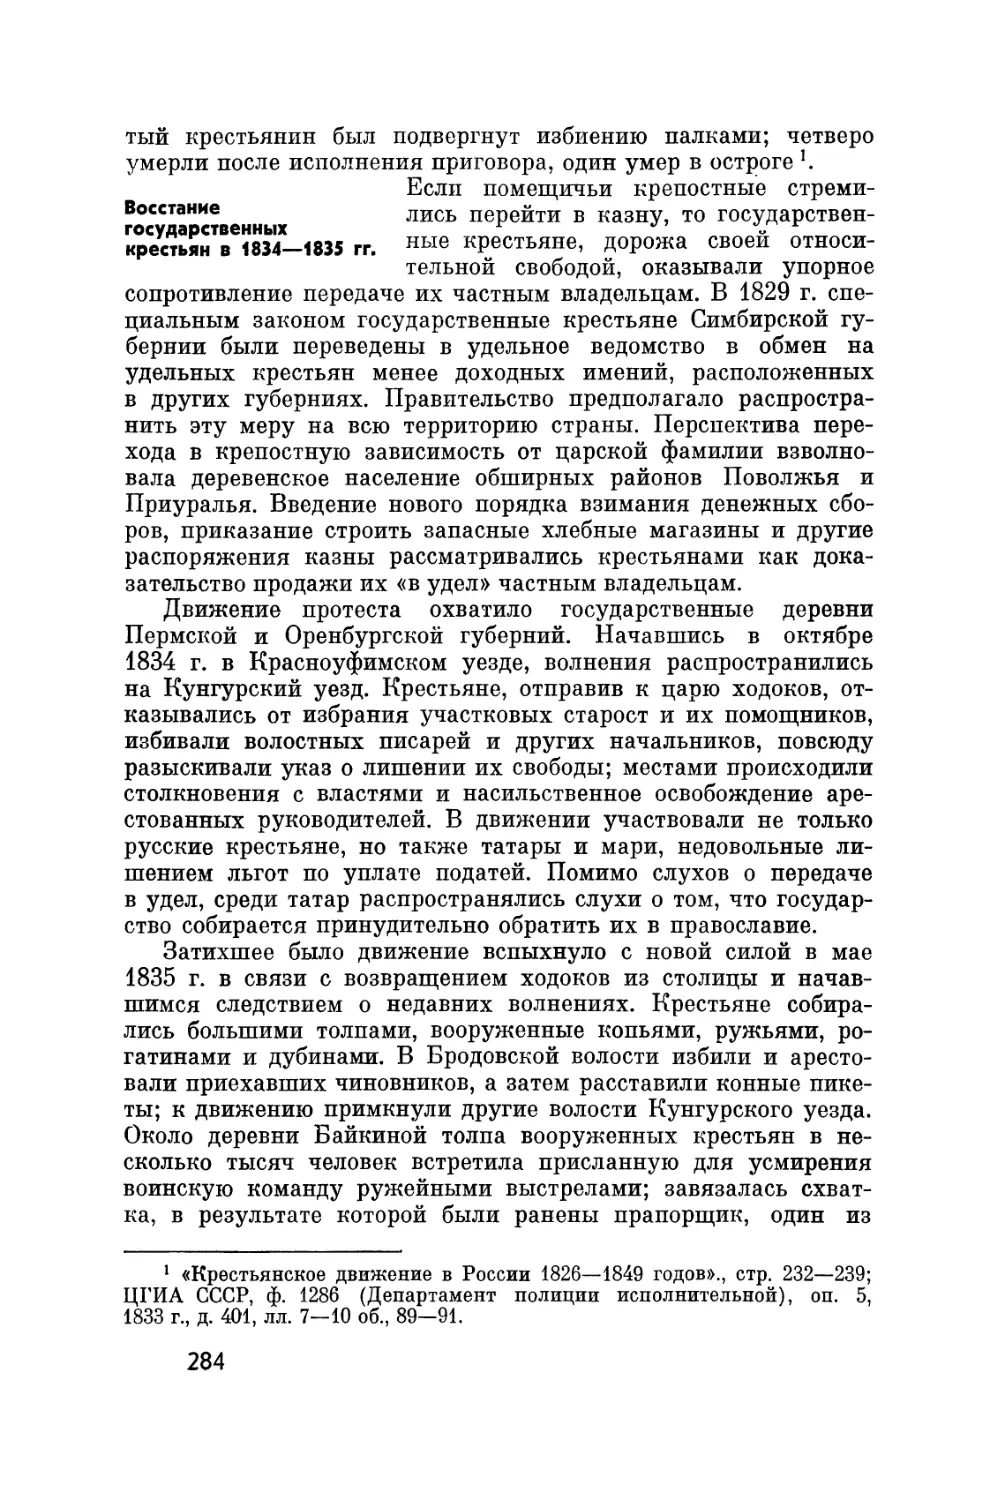 Восстание государственных крестьян в 1834-1835 гг.